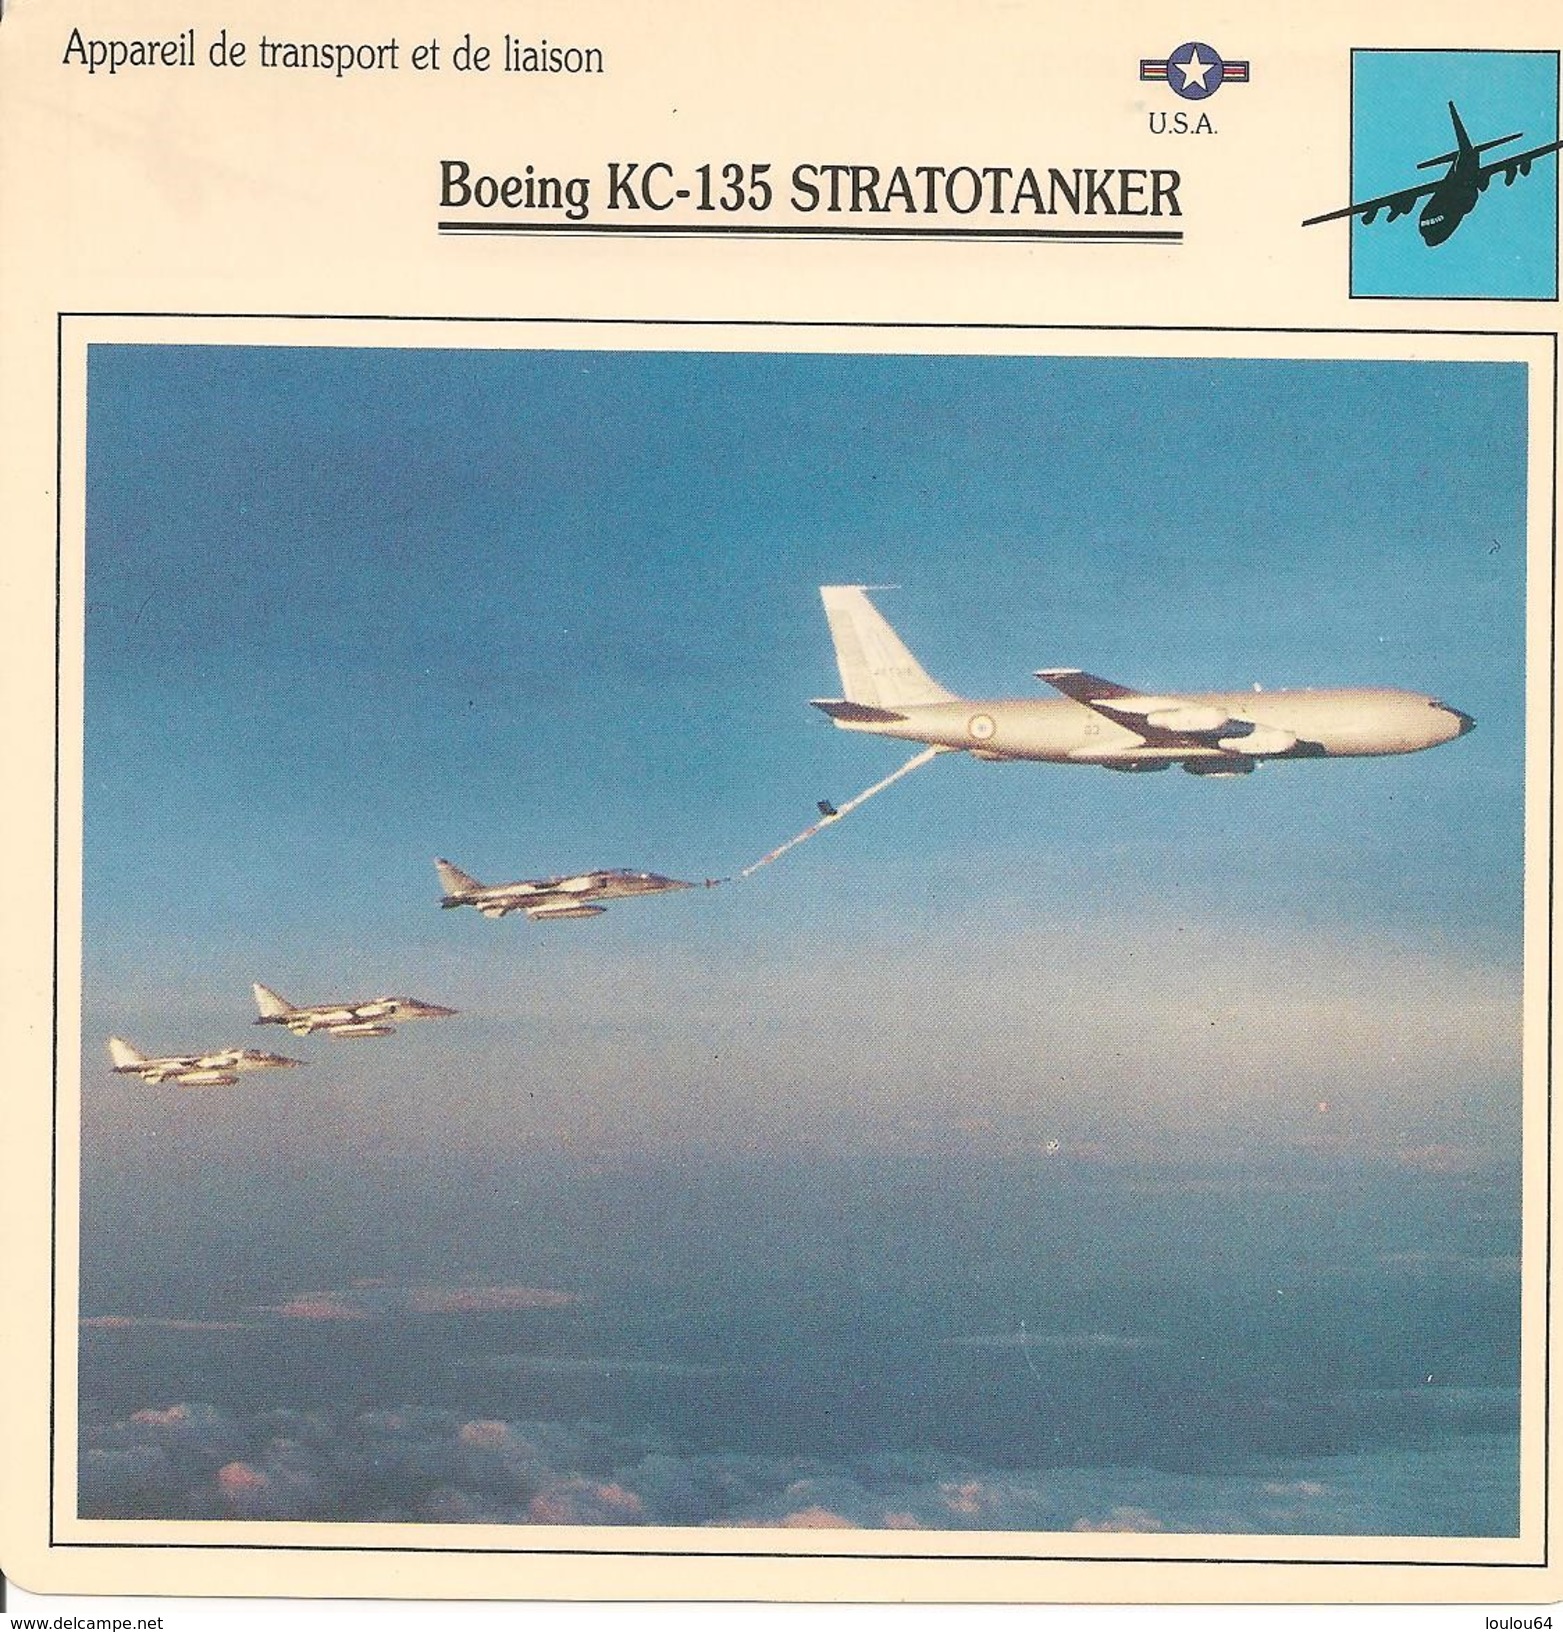 Fiches Illustrées - Caractéristiques Avions - Appareil De Transport - Boeing KC-135 STRATOTANKER - U.S.A. - (17)  - - Aviation